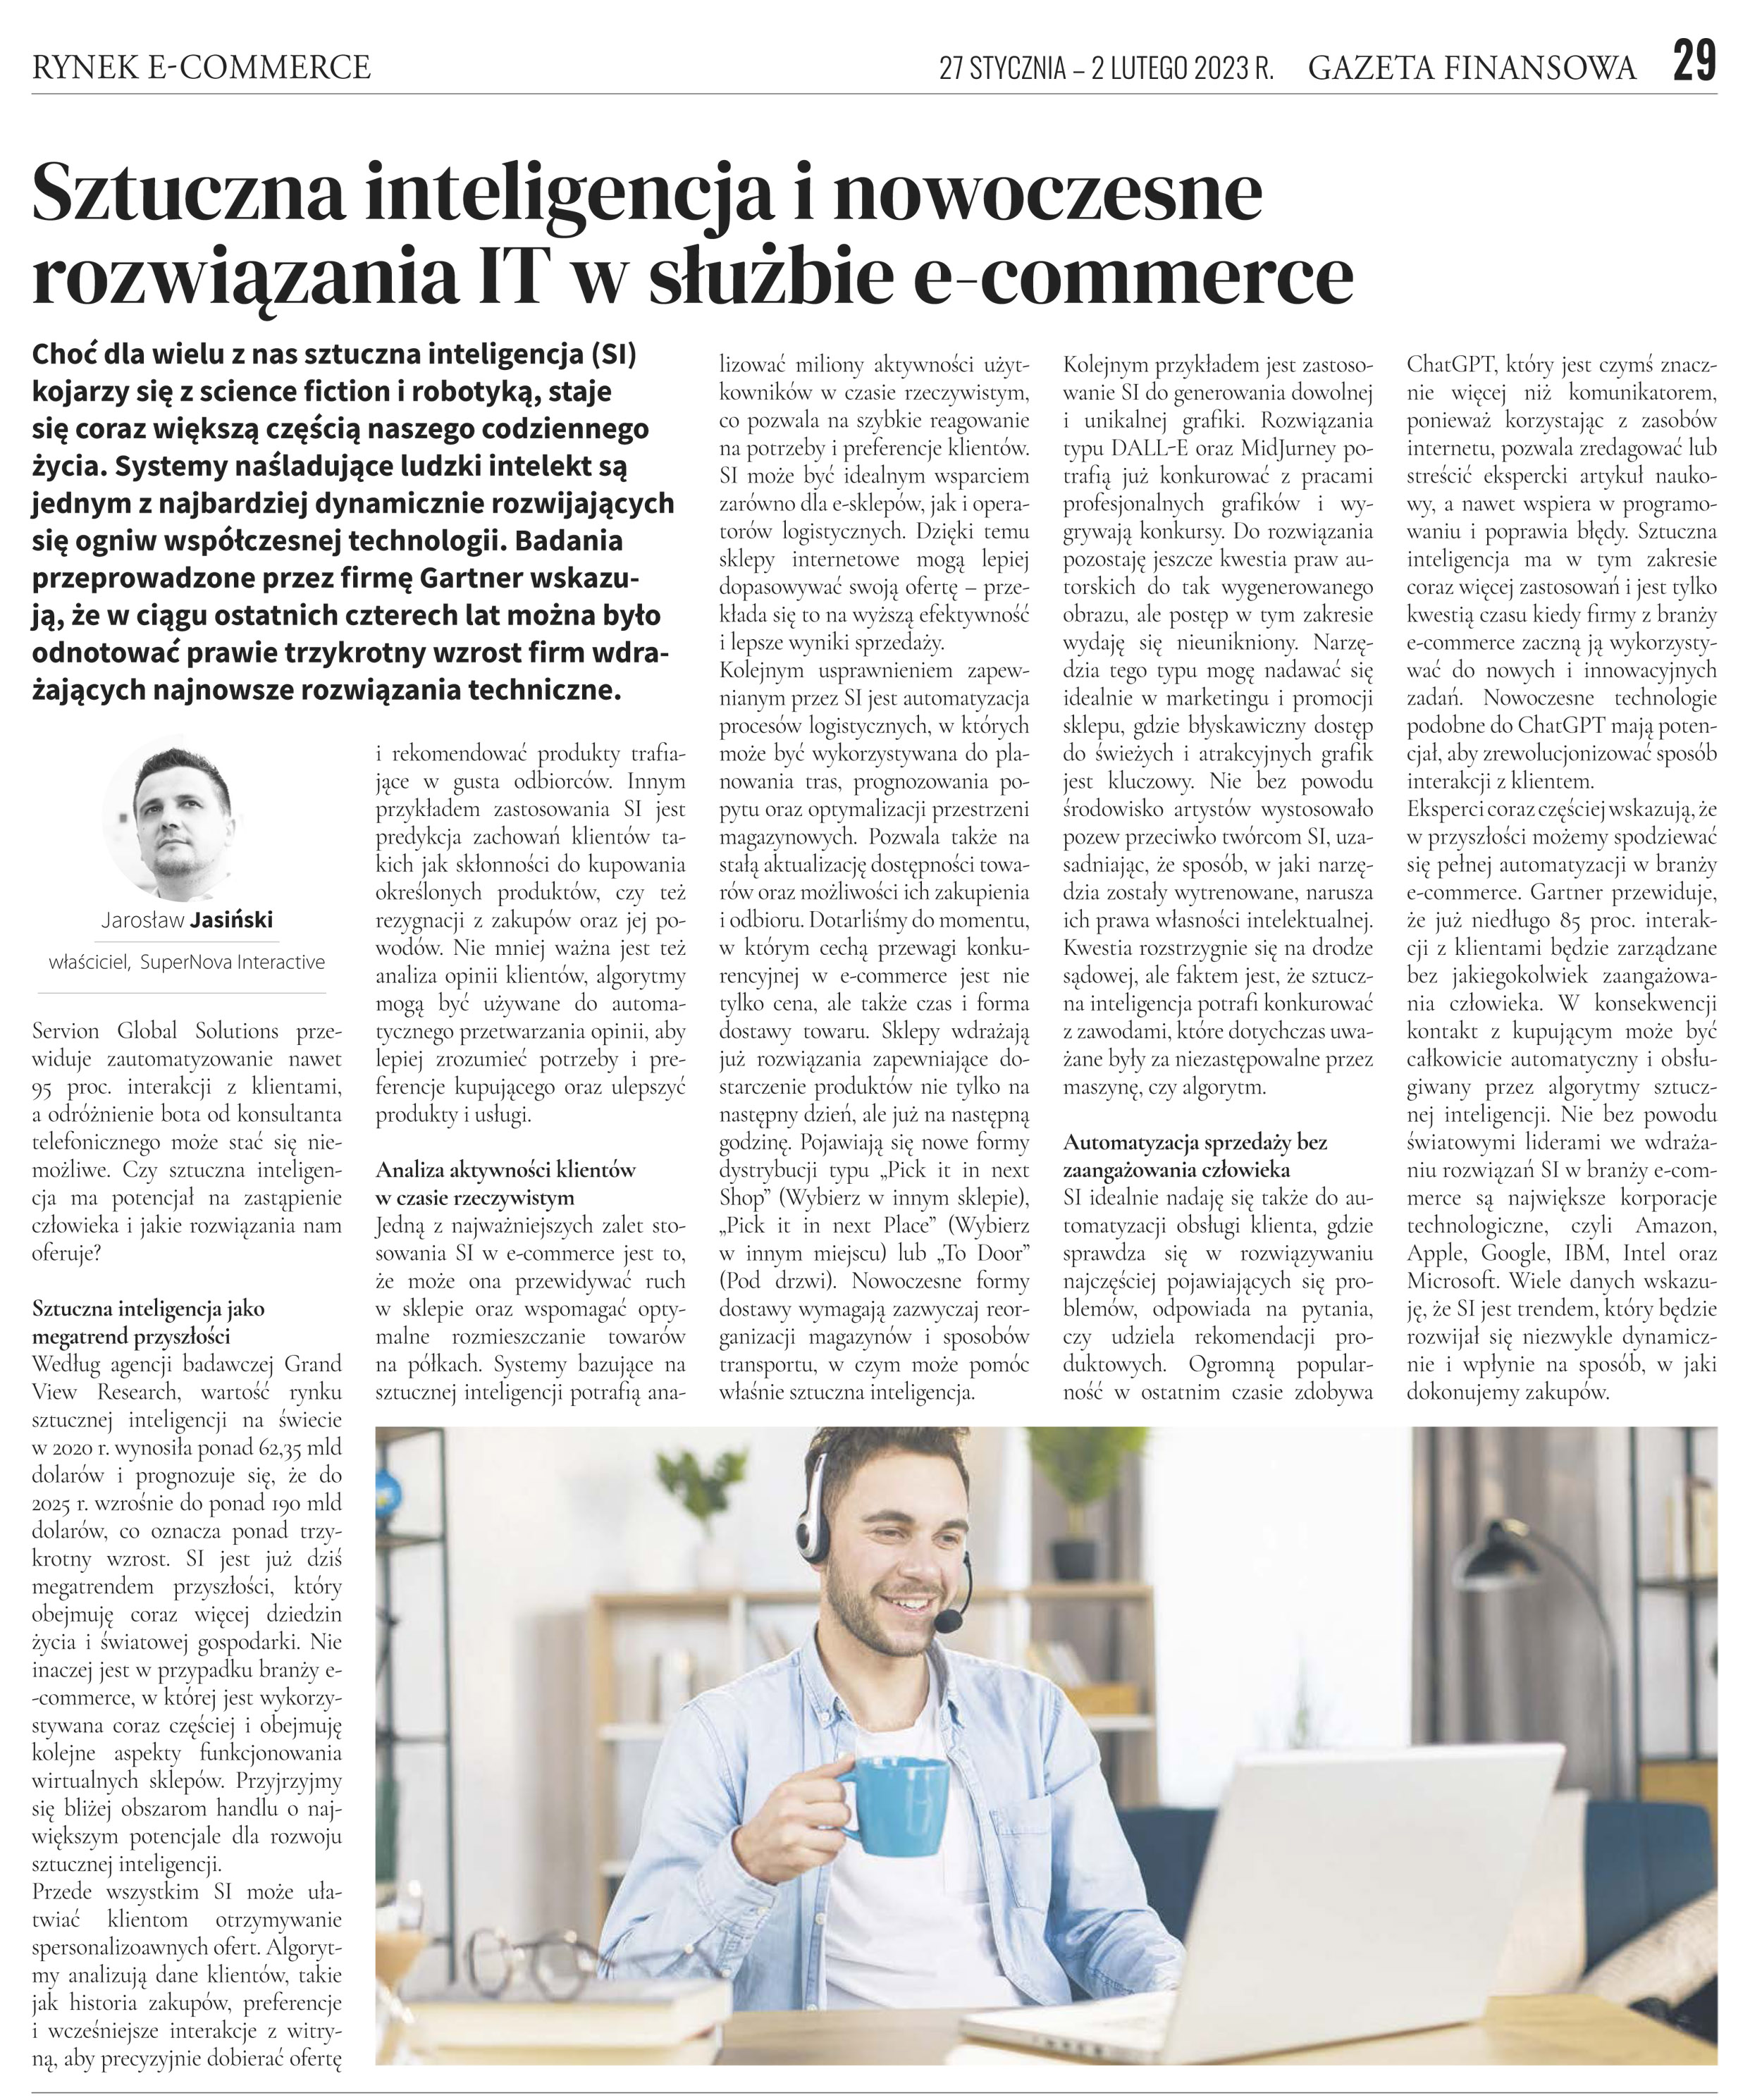 Jarosław Jasiński - Sztuczna inteligencja w e-commerce rewolucjonizuje sprzedaż